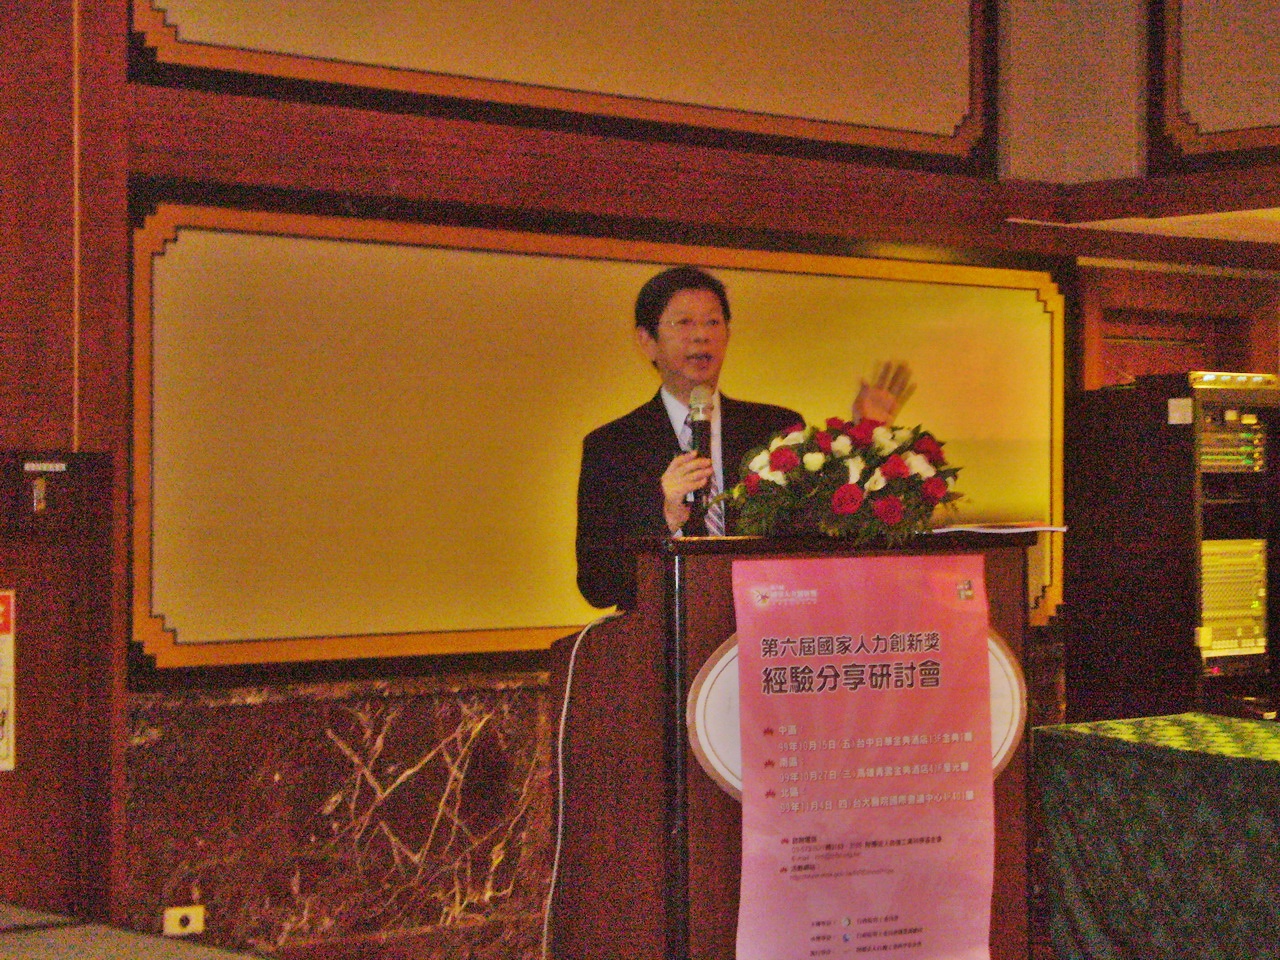 中國醫藥大學副校長陳偉德受邀傳授人力創新的心得經驗